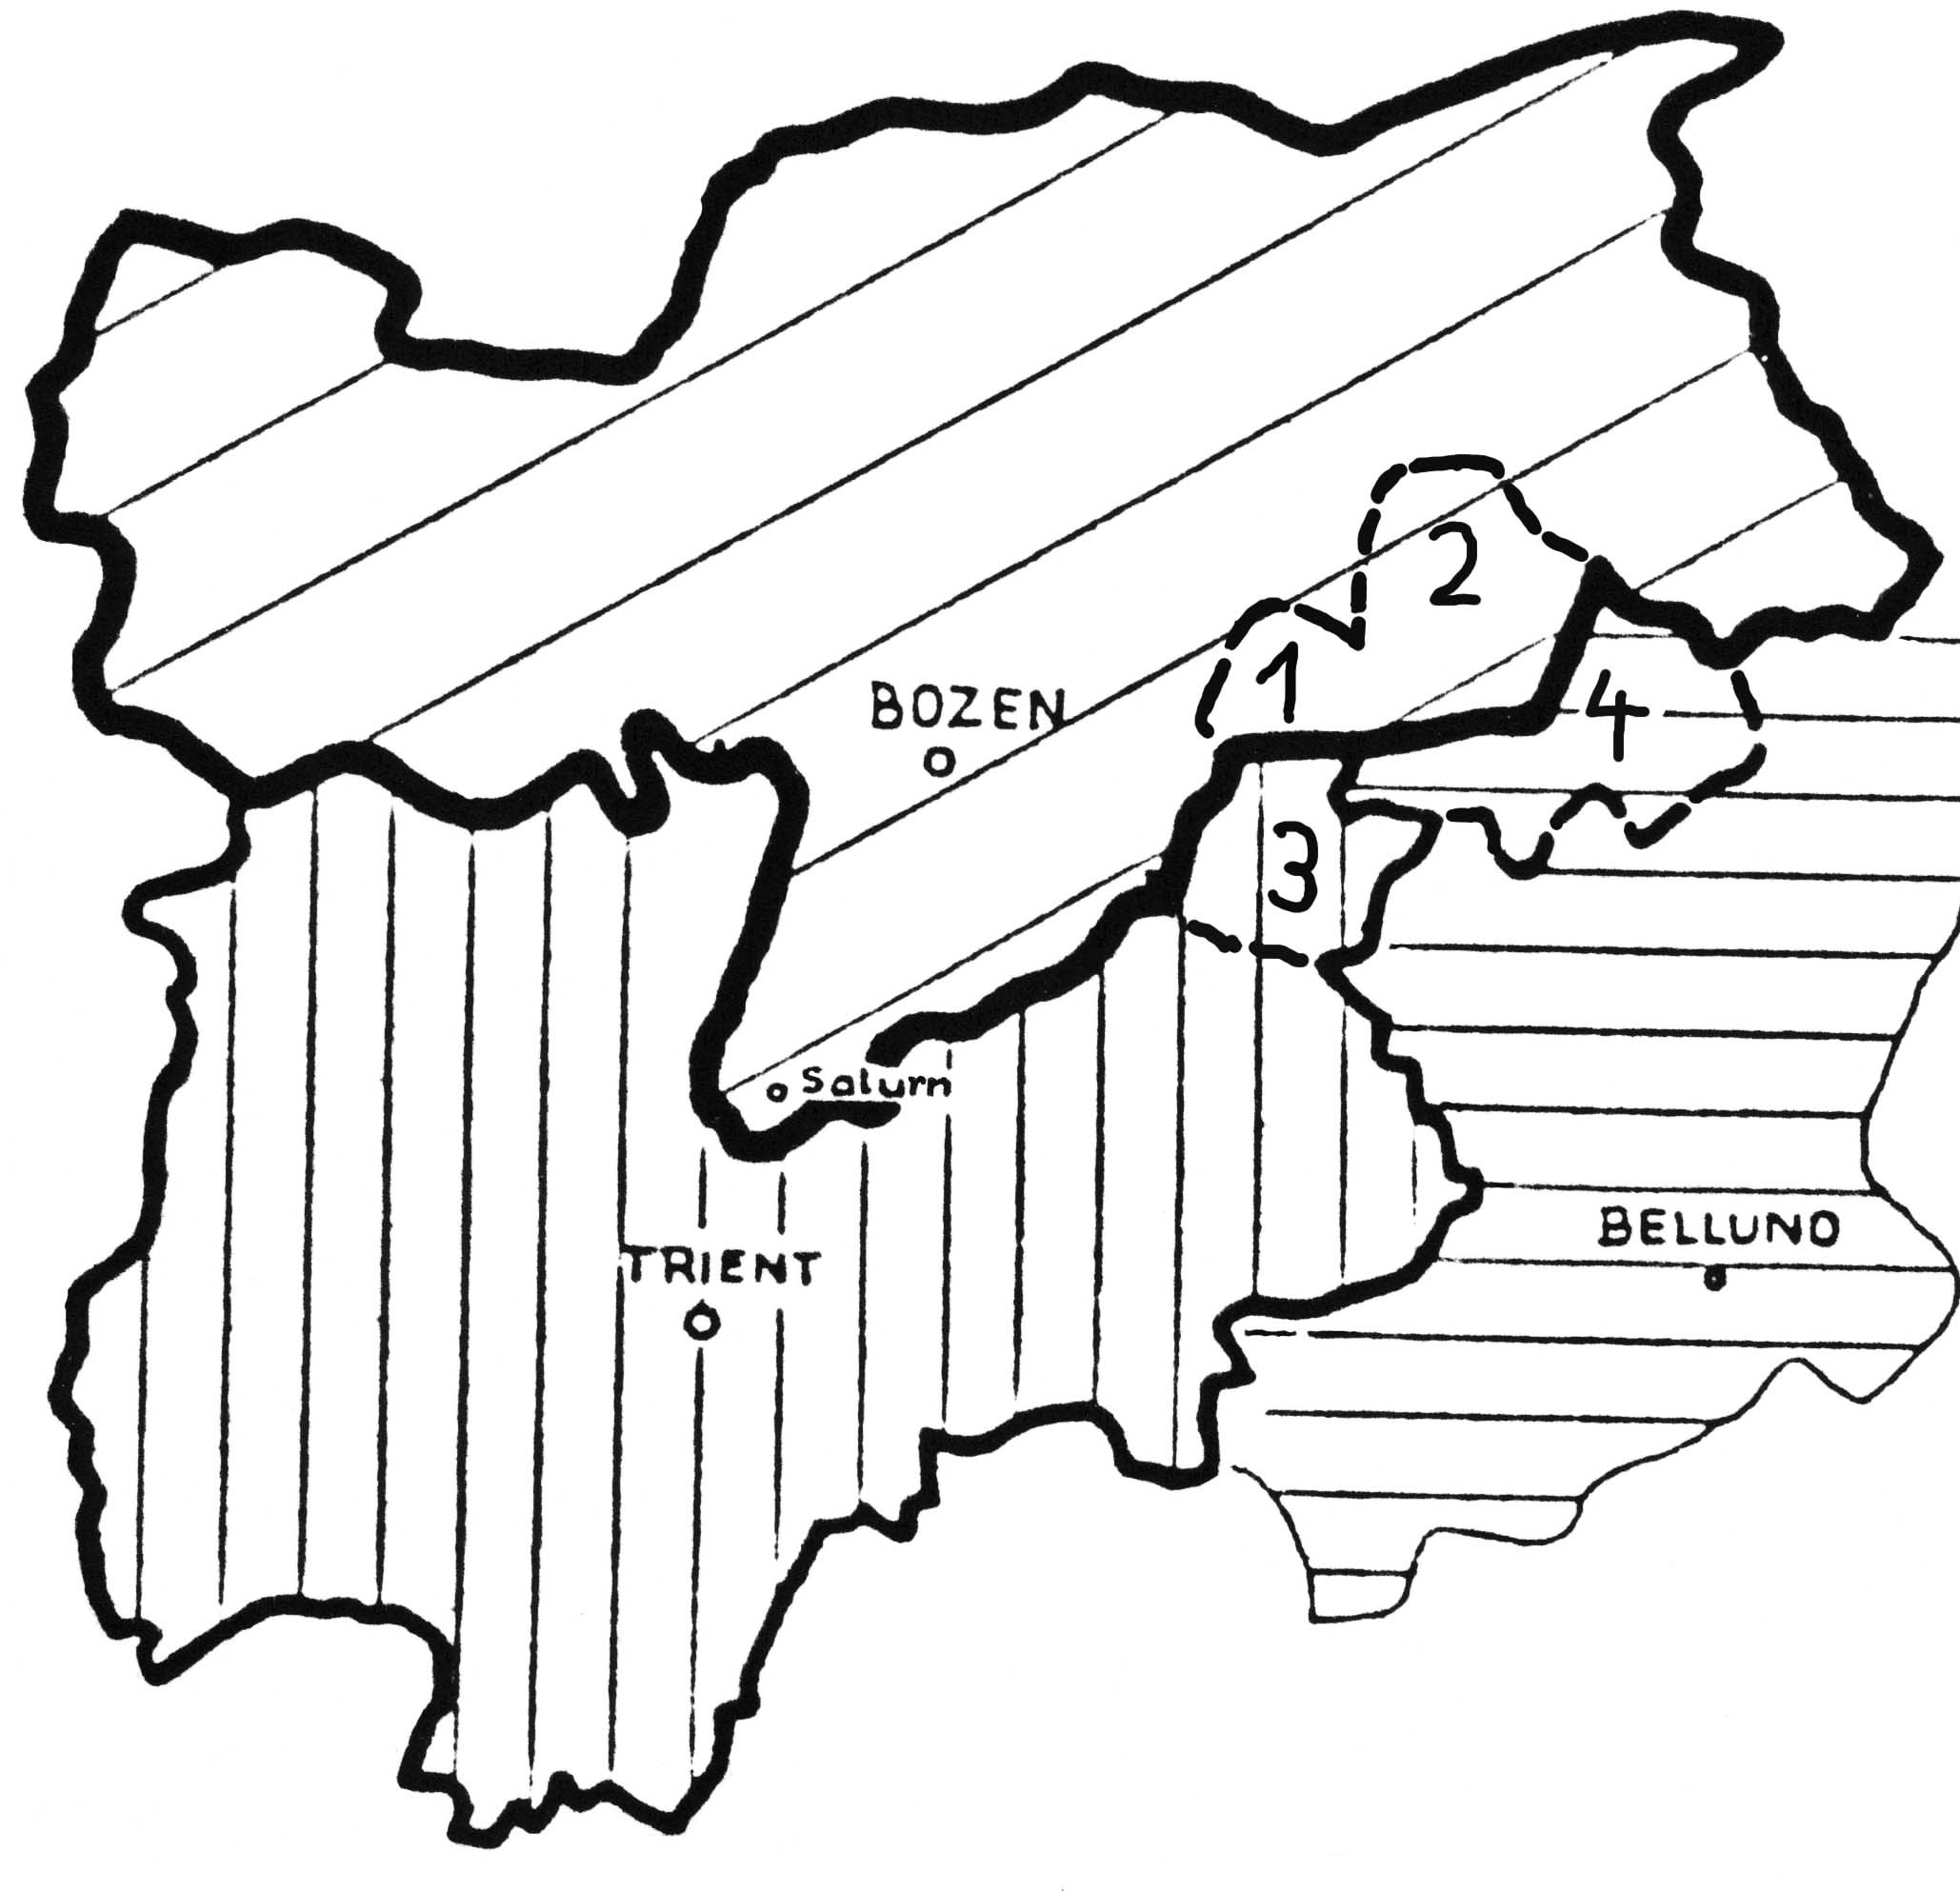 Diese Darstellung zeigt die Aufteilung der Ladiner auf die Provinzen Bozen (1 Gröden, 2 Gadertal), Trient (3 Fassa- und Fleimstal) und Belluno (4 Ampezzo, Buchenstein).